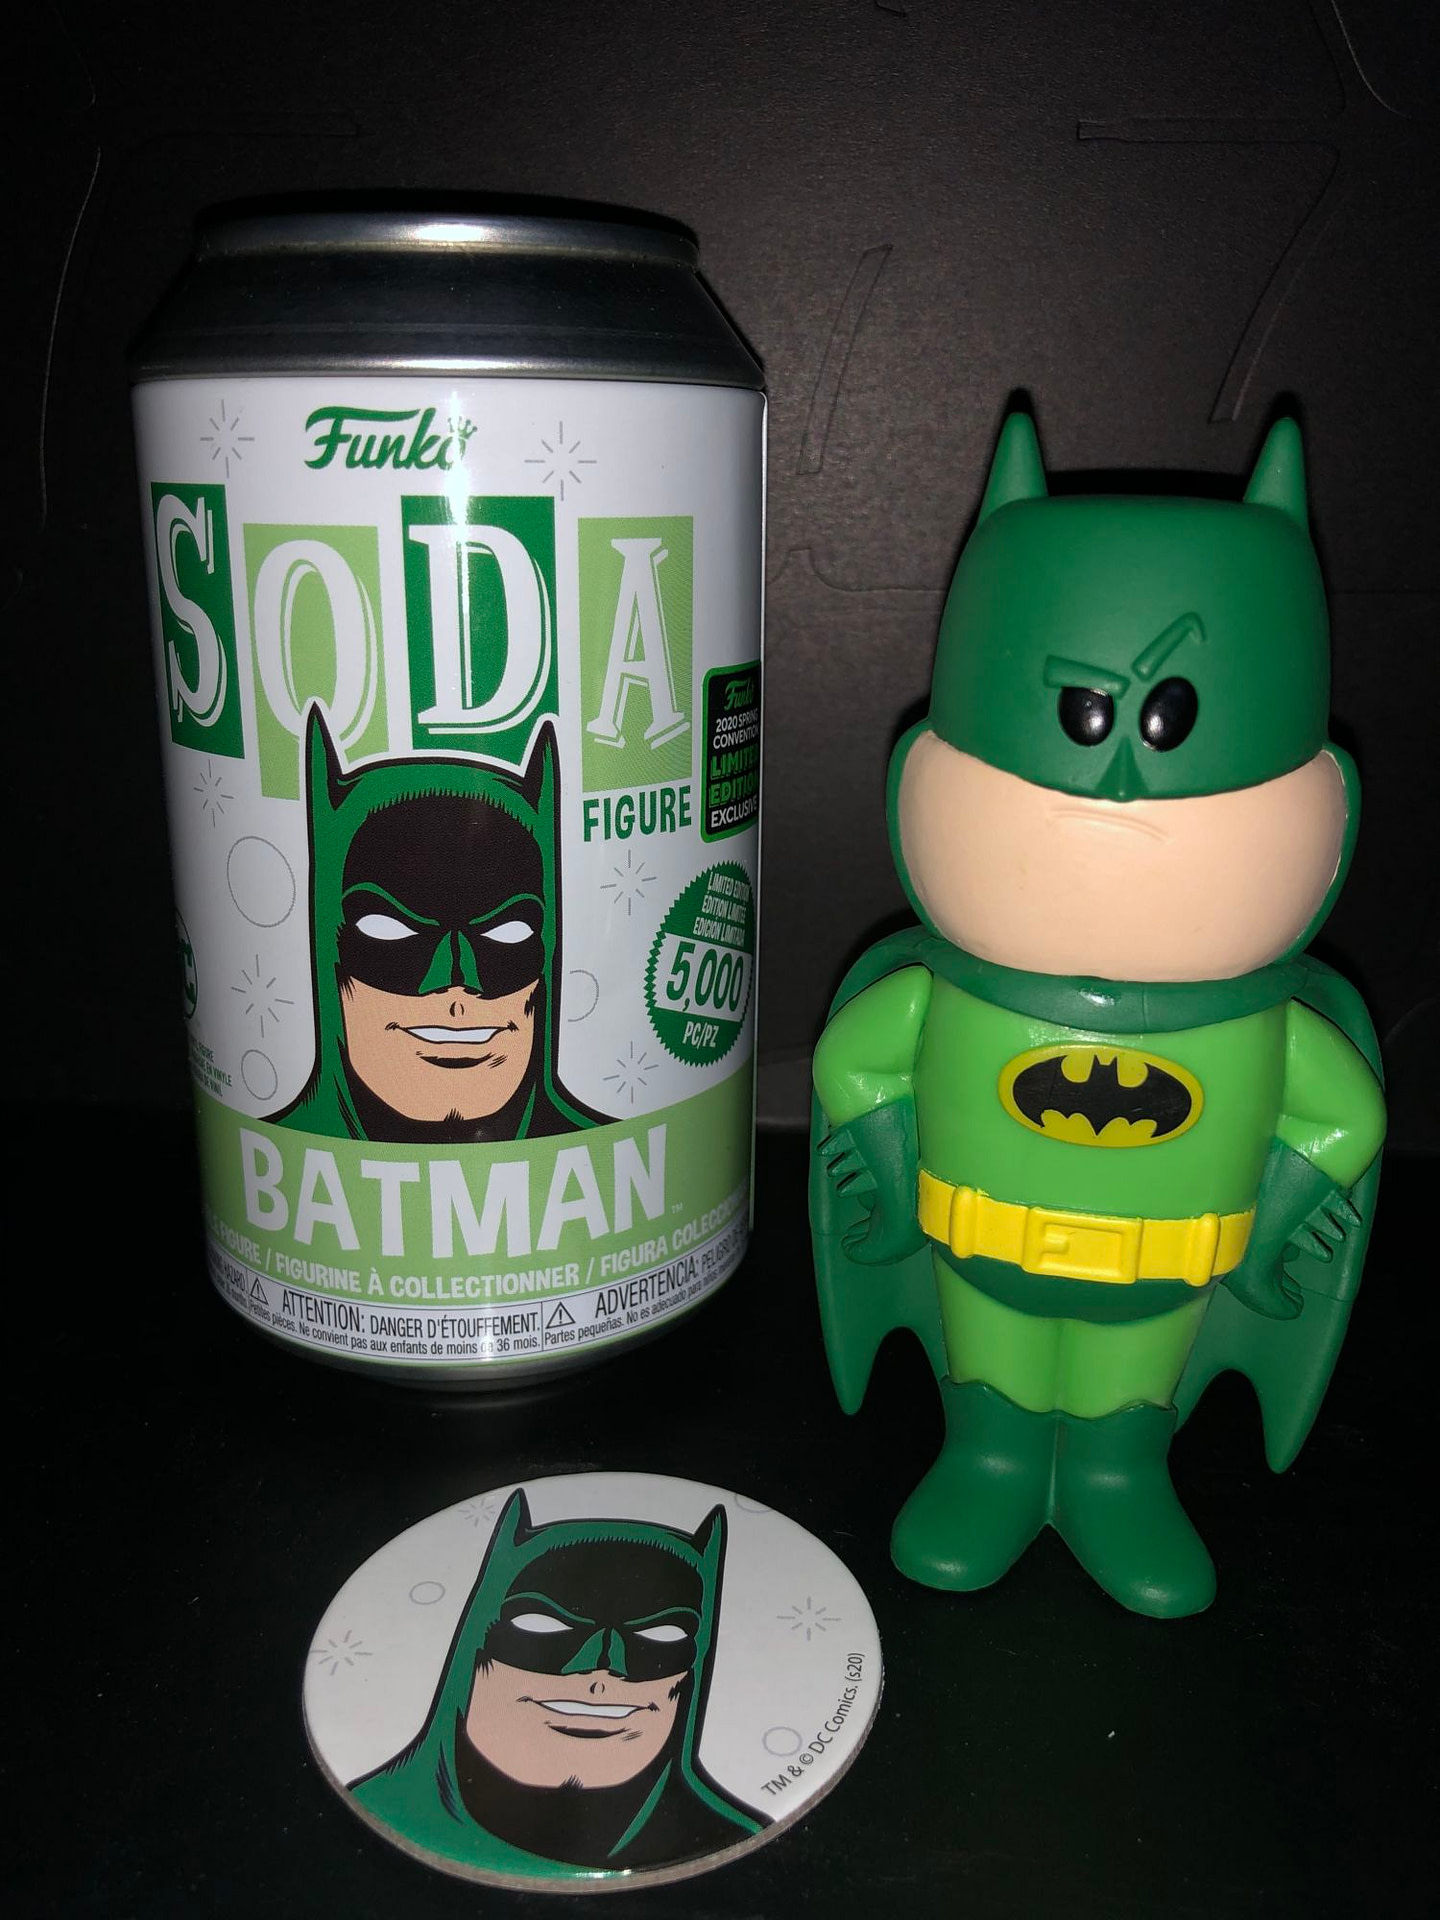 Funko Soda Vinyl Figure Emerald City Comic Con Exclusive Green Batman Figure, view of figure and can.